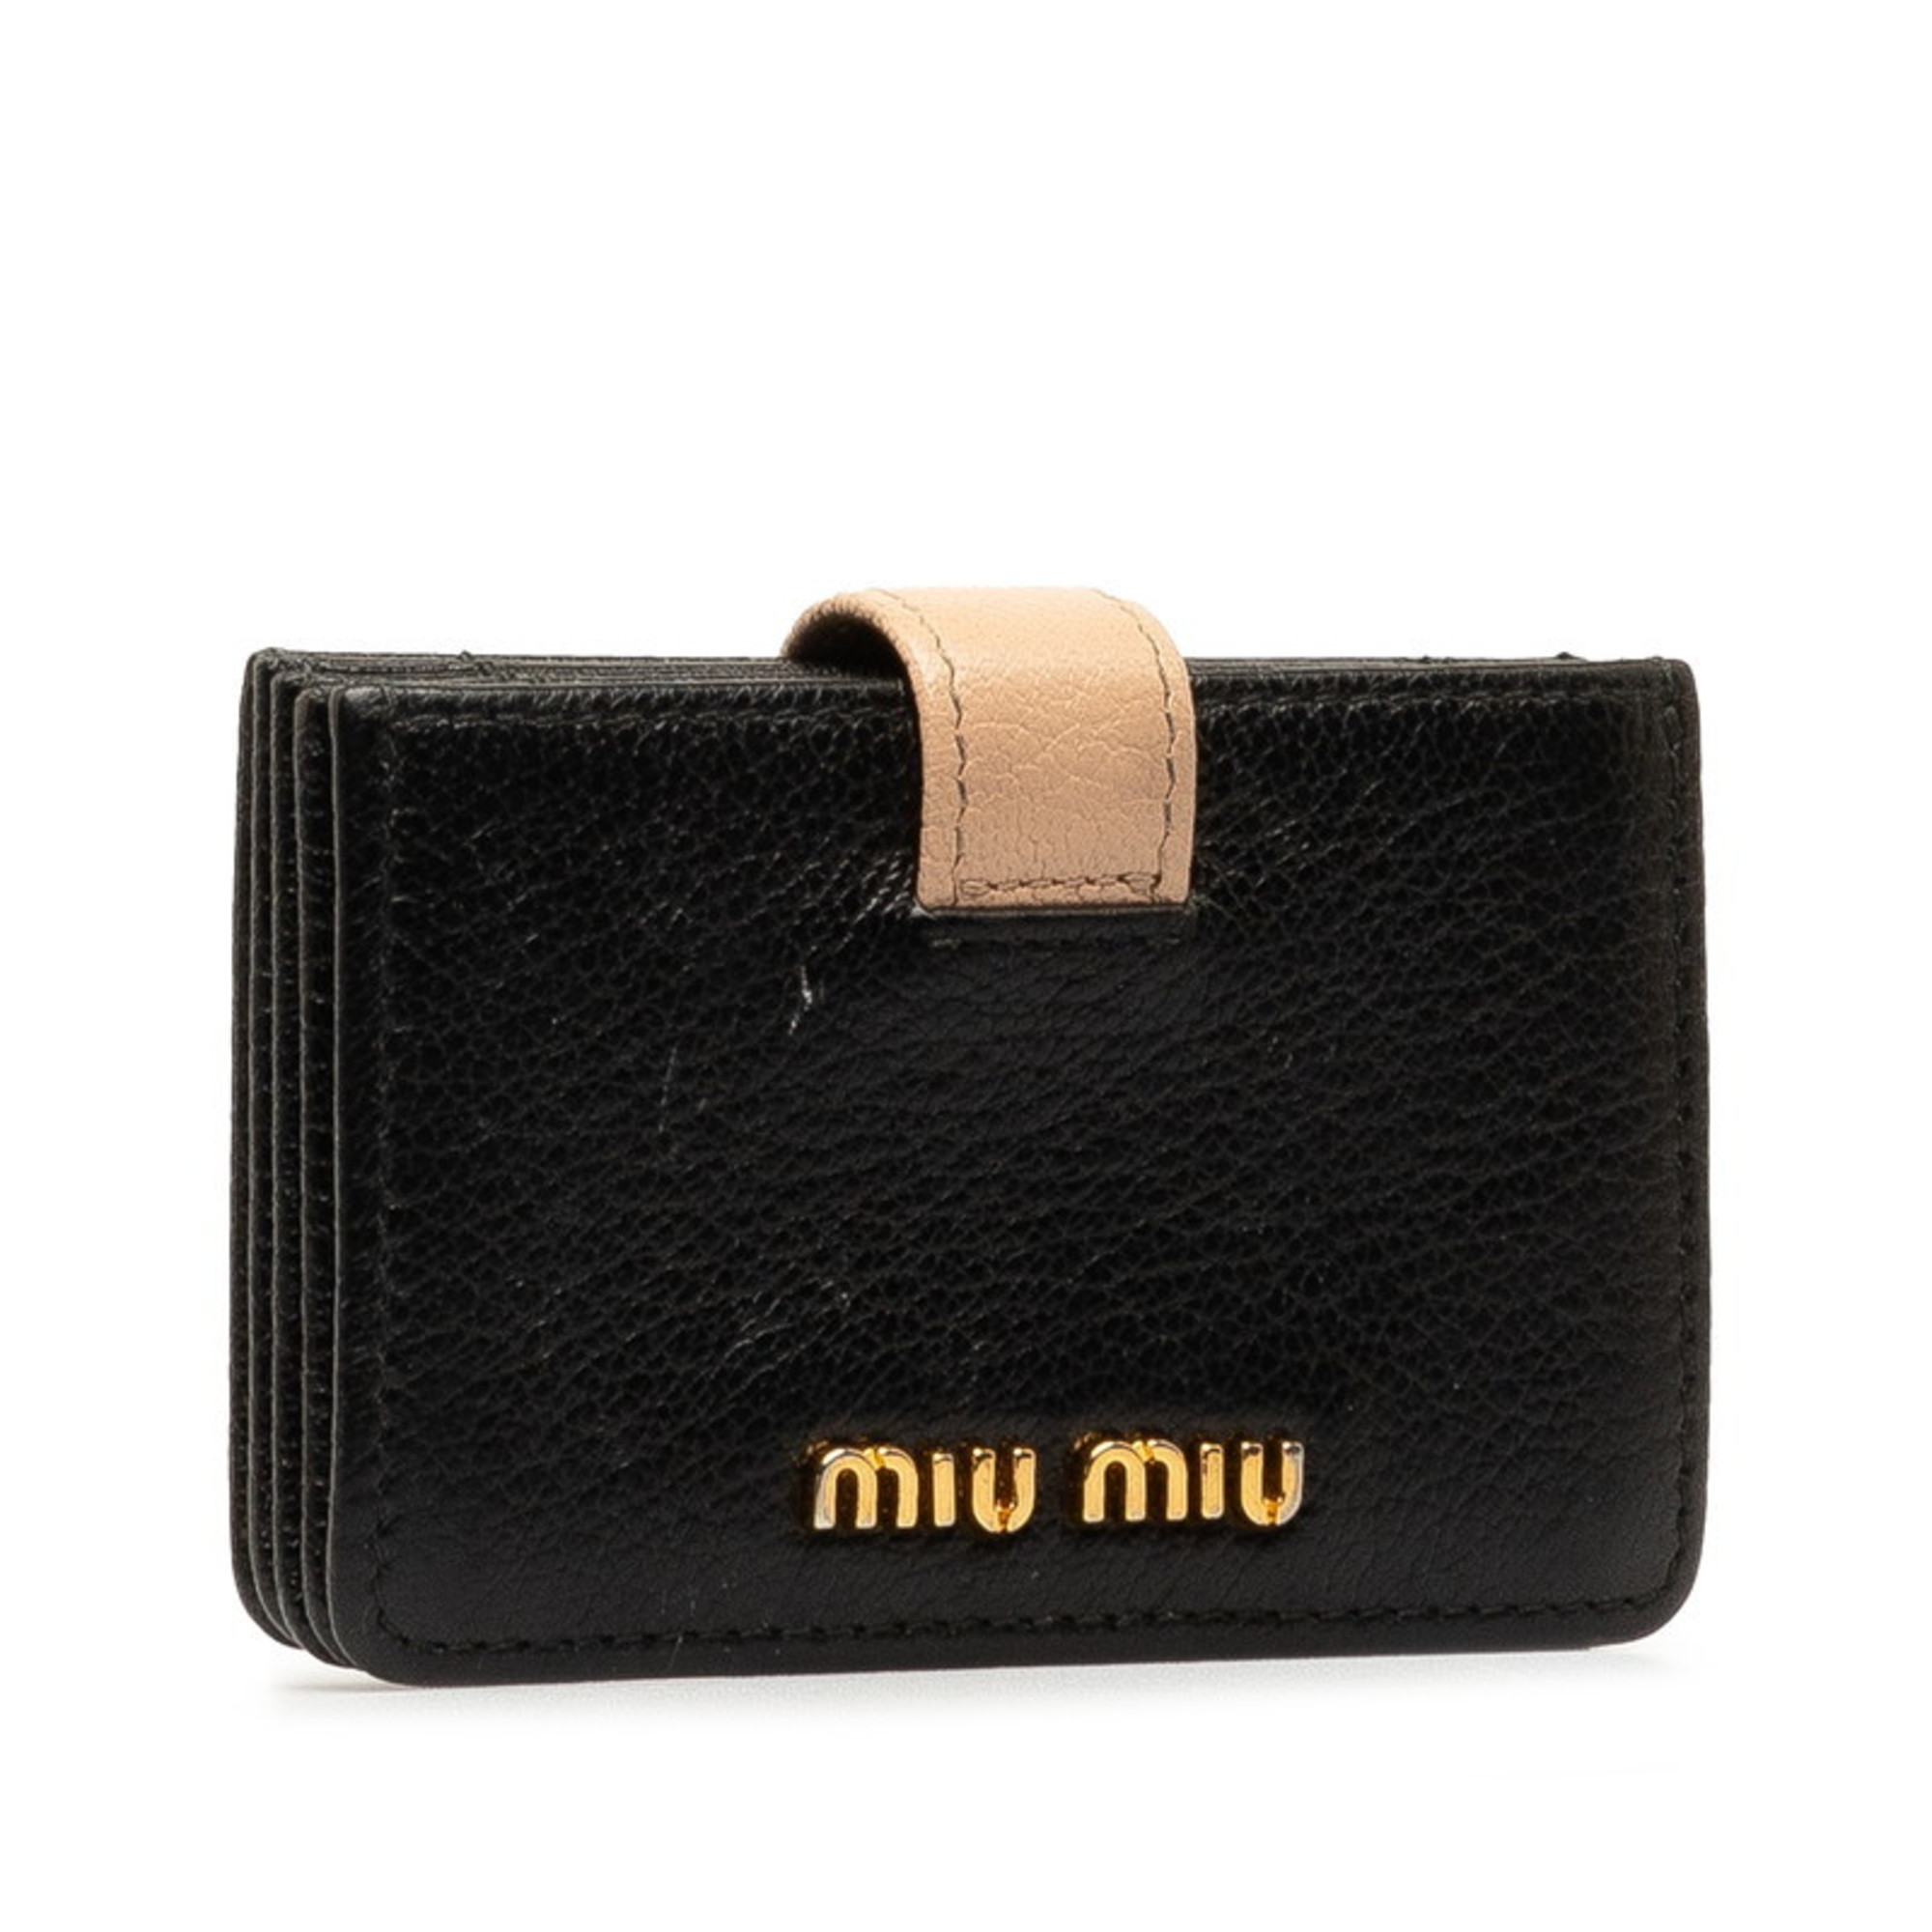 Miu Miu Miu Card Case Business Holder Black Pink Leather Women's